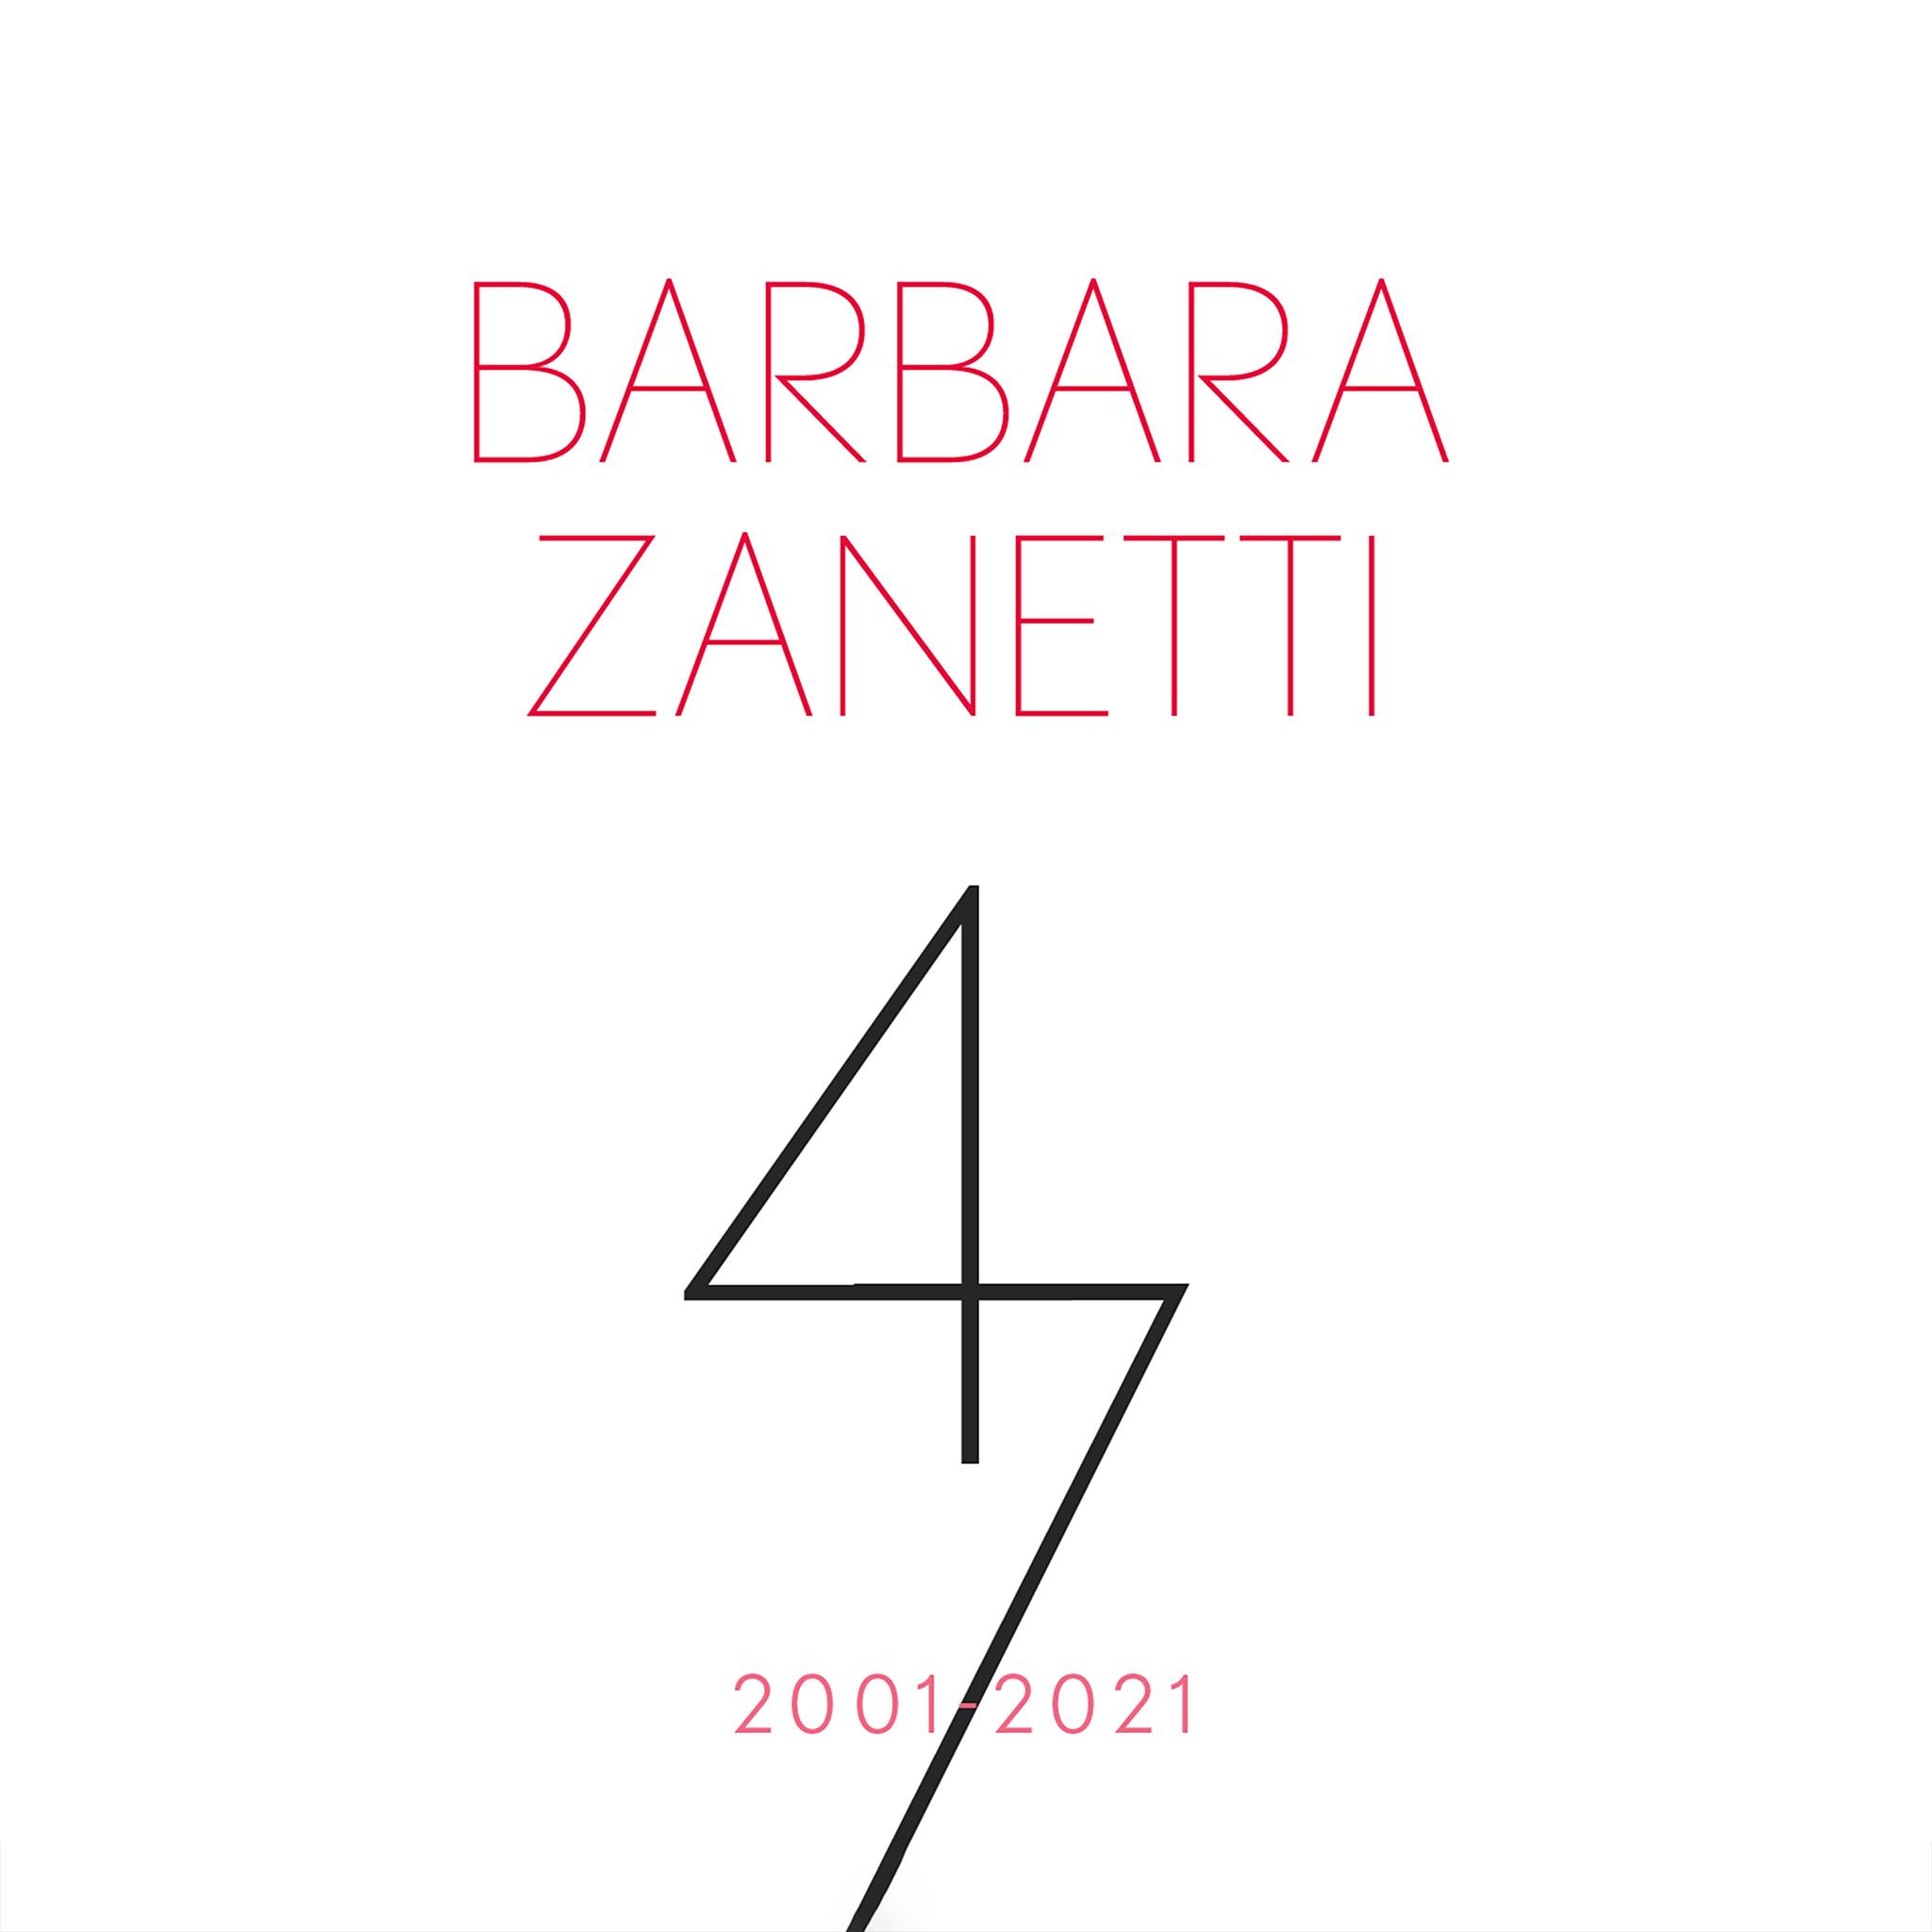 Barbara Zanetti „47 - 2001/2021“